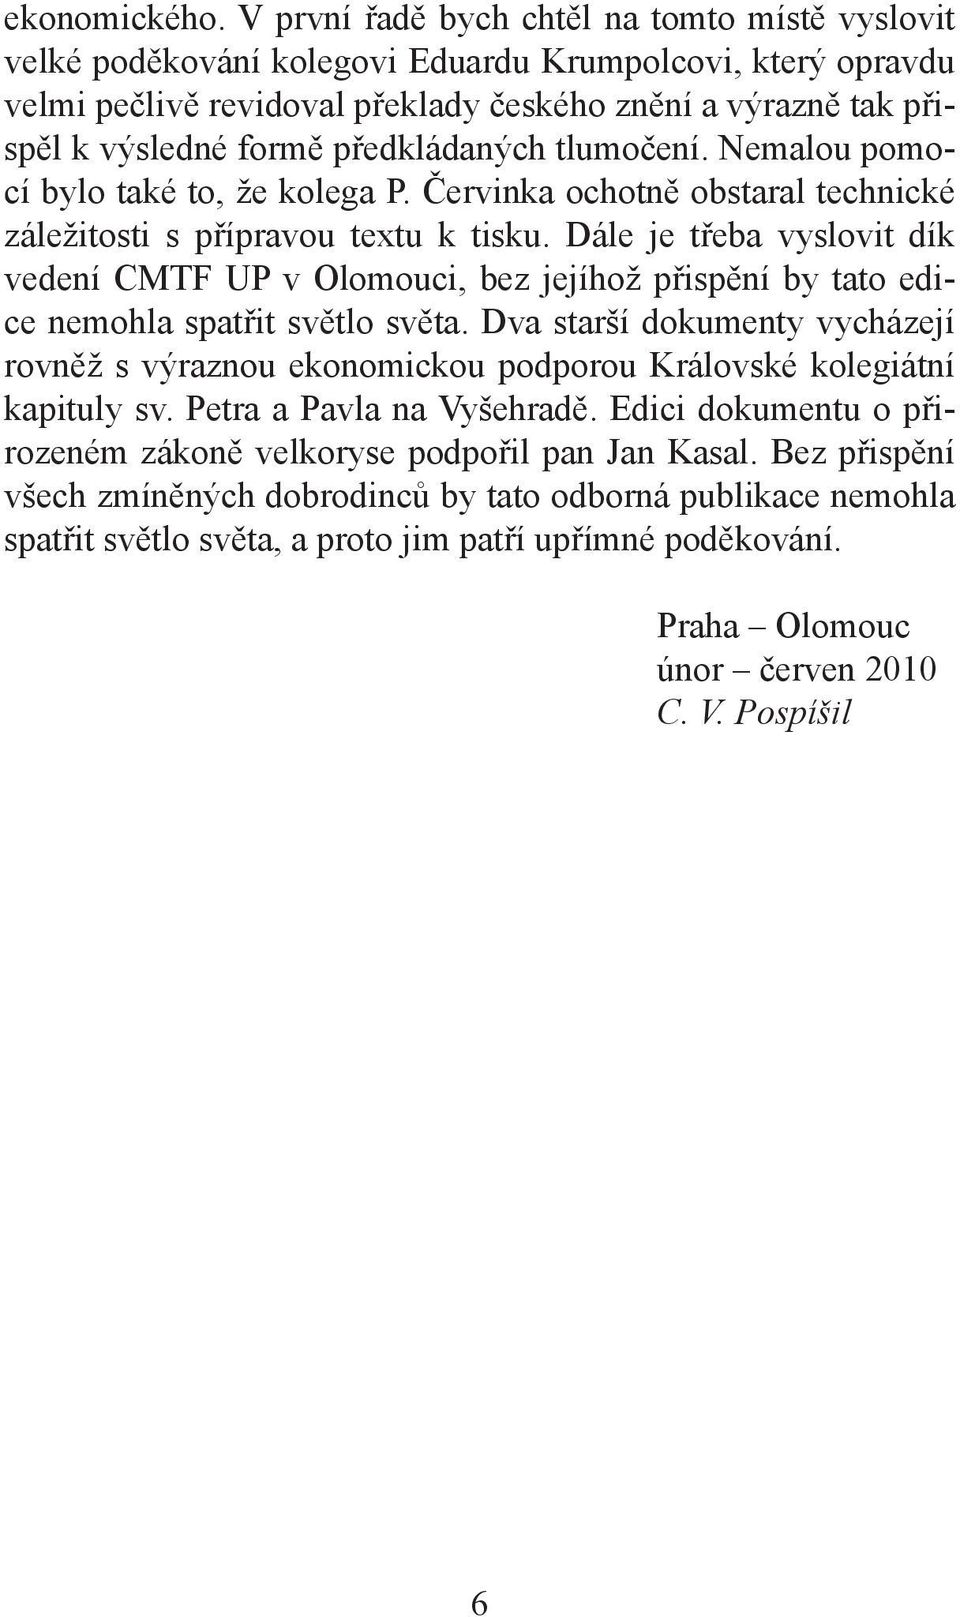 předkládaných tlumočení. Nemalou pomocí bylo také to, že kolega P. Červinka ochotně obstaral technické záležitosti s přípravou textu k tisku.